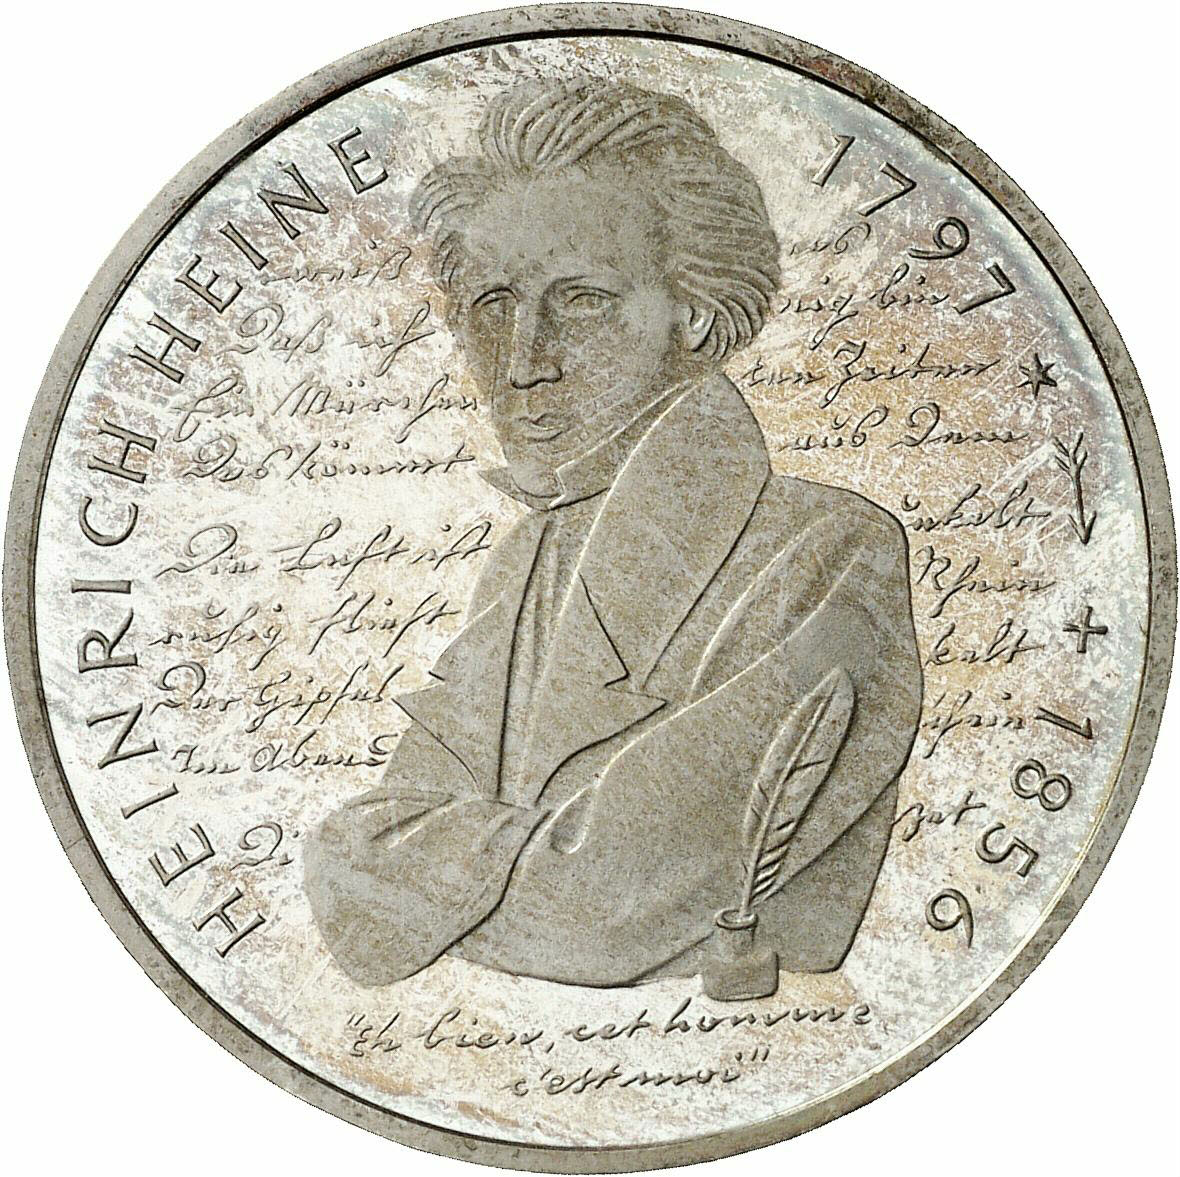 DE 10 Deutsche Mark 1997 D